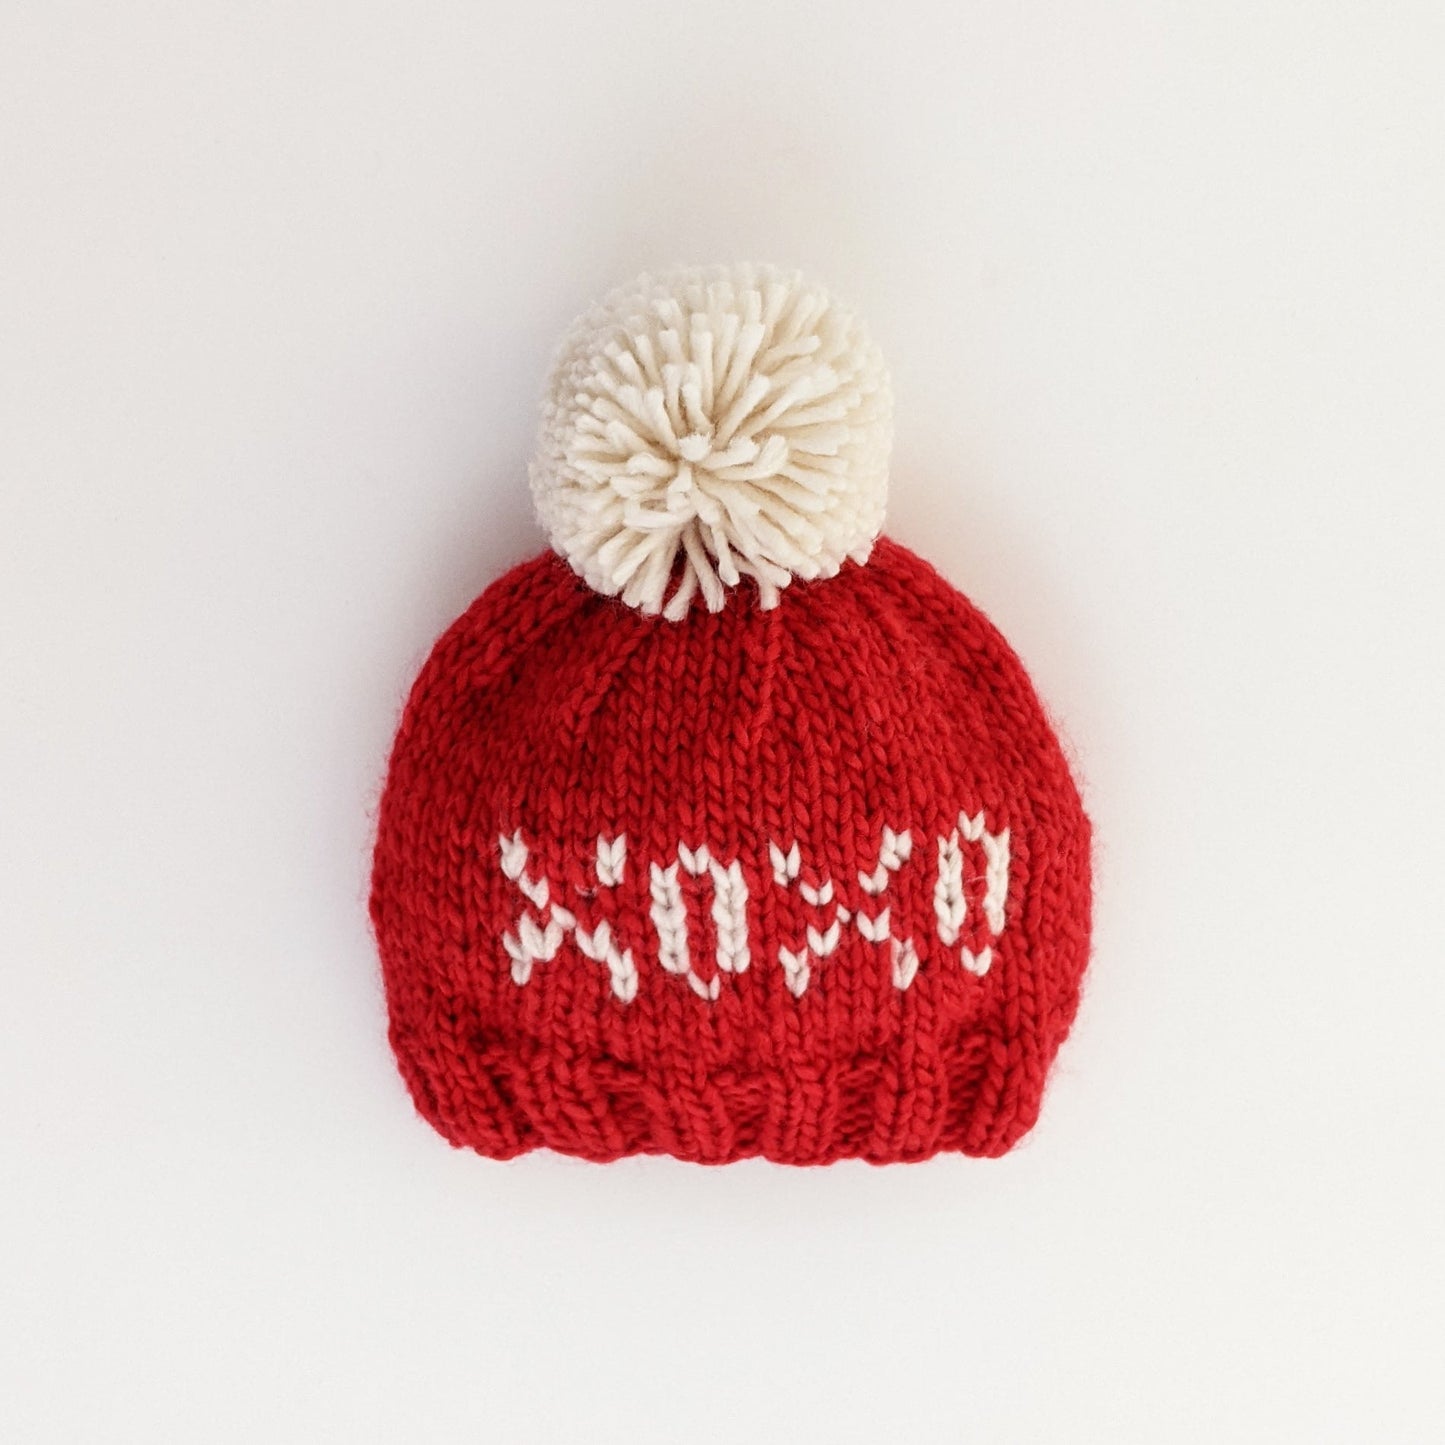 XOXO Red Valentine's Day Hand Knit Beanie Hat